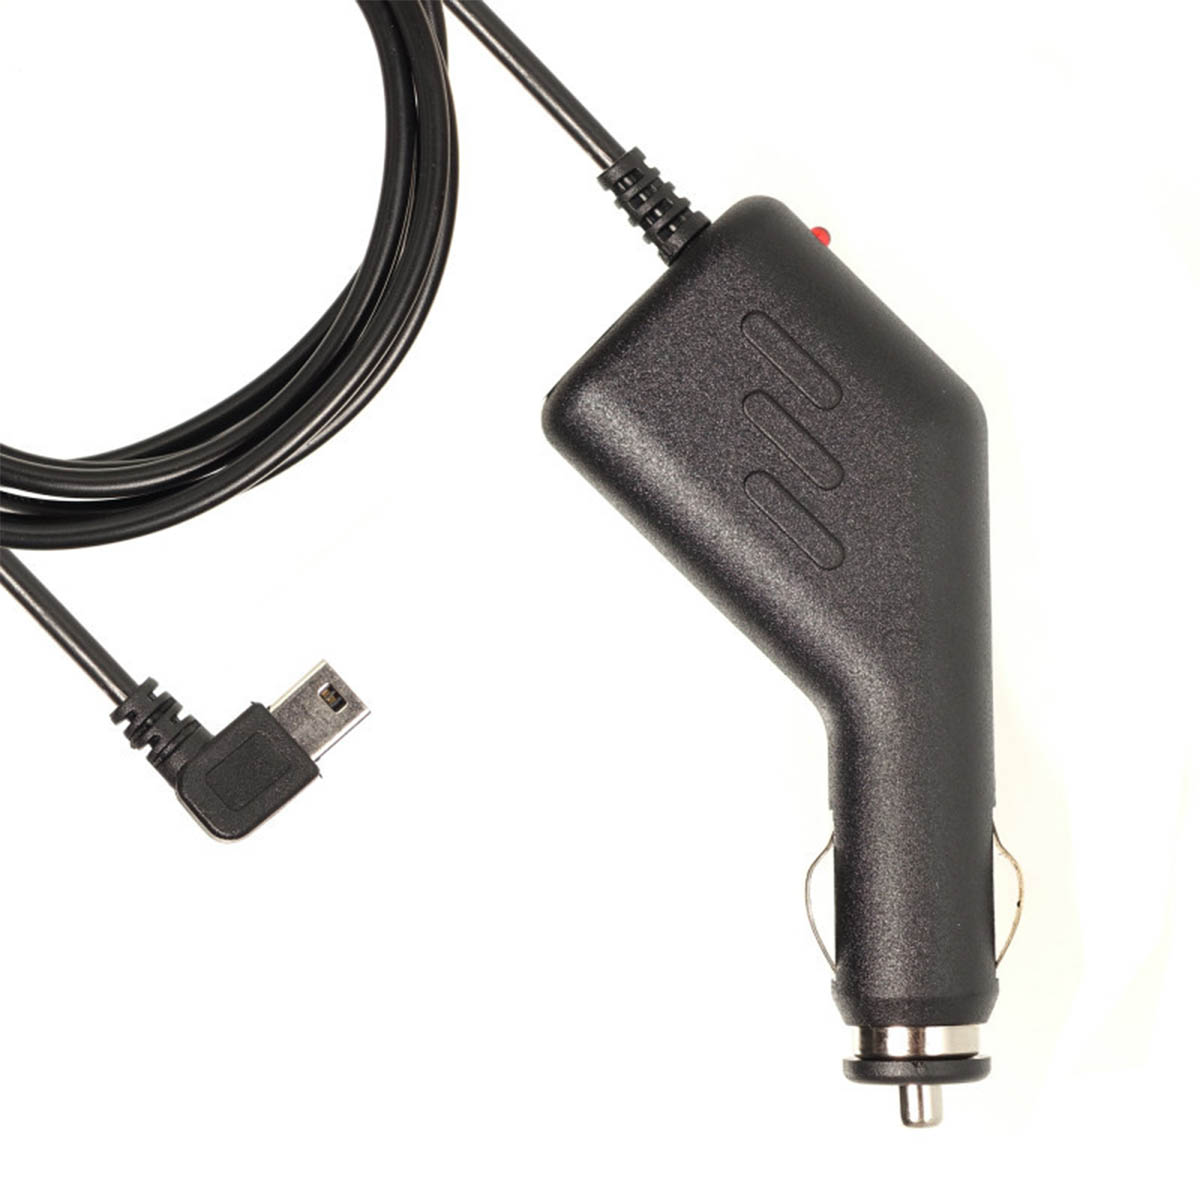 АЗУ (Автомобильное зарядное устройство) LP6 V3 с кабелем Mini USB, длина 1.5 метра, угловой штекер, цвет черный